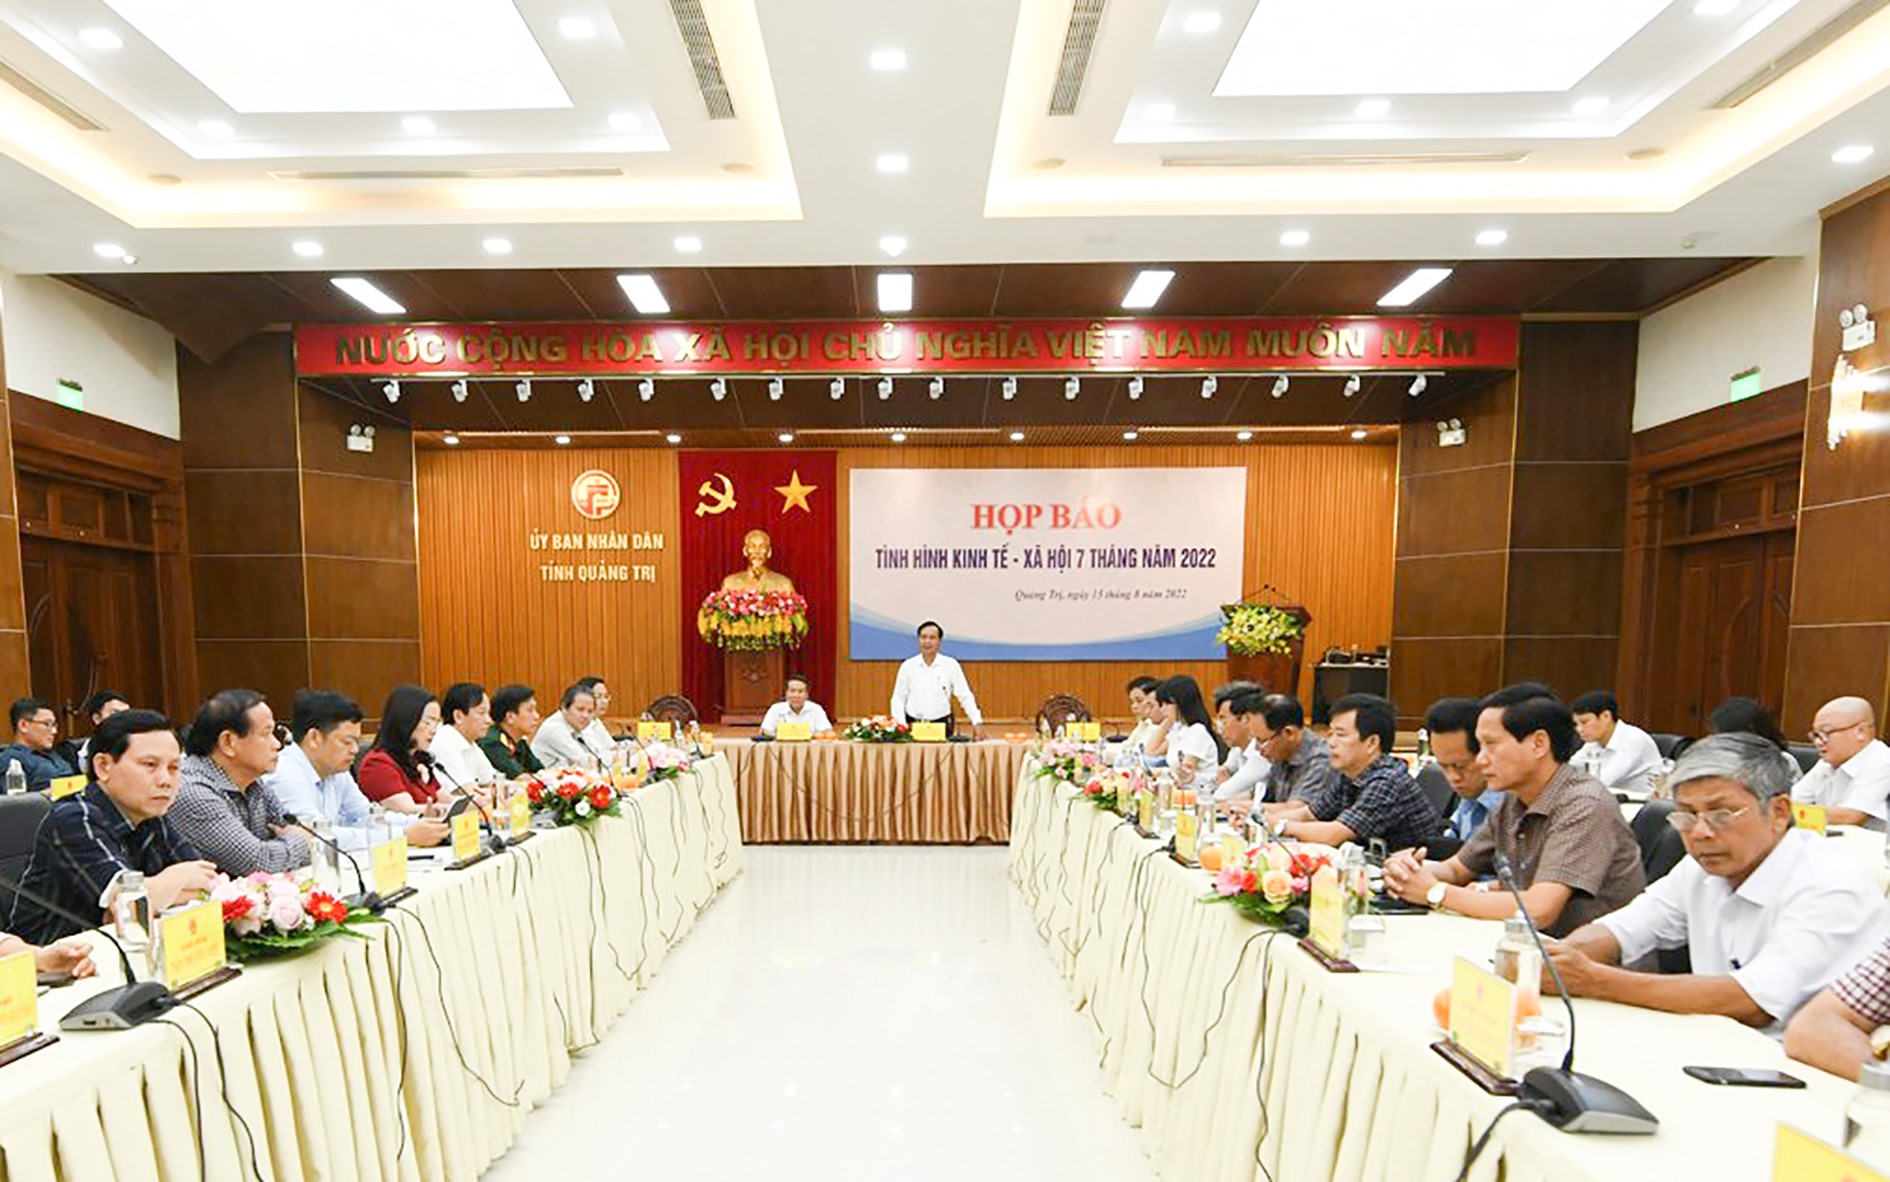 Chủ tịch UBND tỉnh Võ Văn Hưng và các phó chủ tịch UBND tỉnh chủ trì buổi họp báo - Ảnh: Trần Tuyền